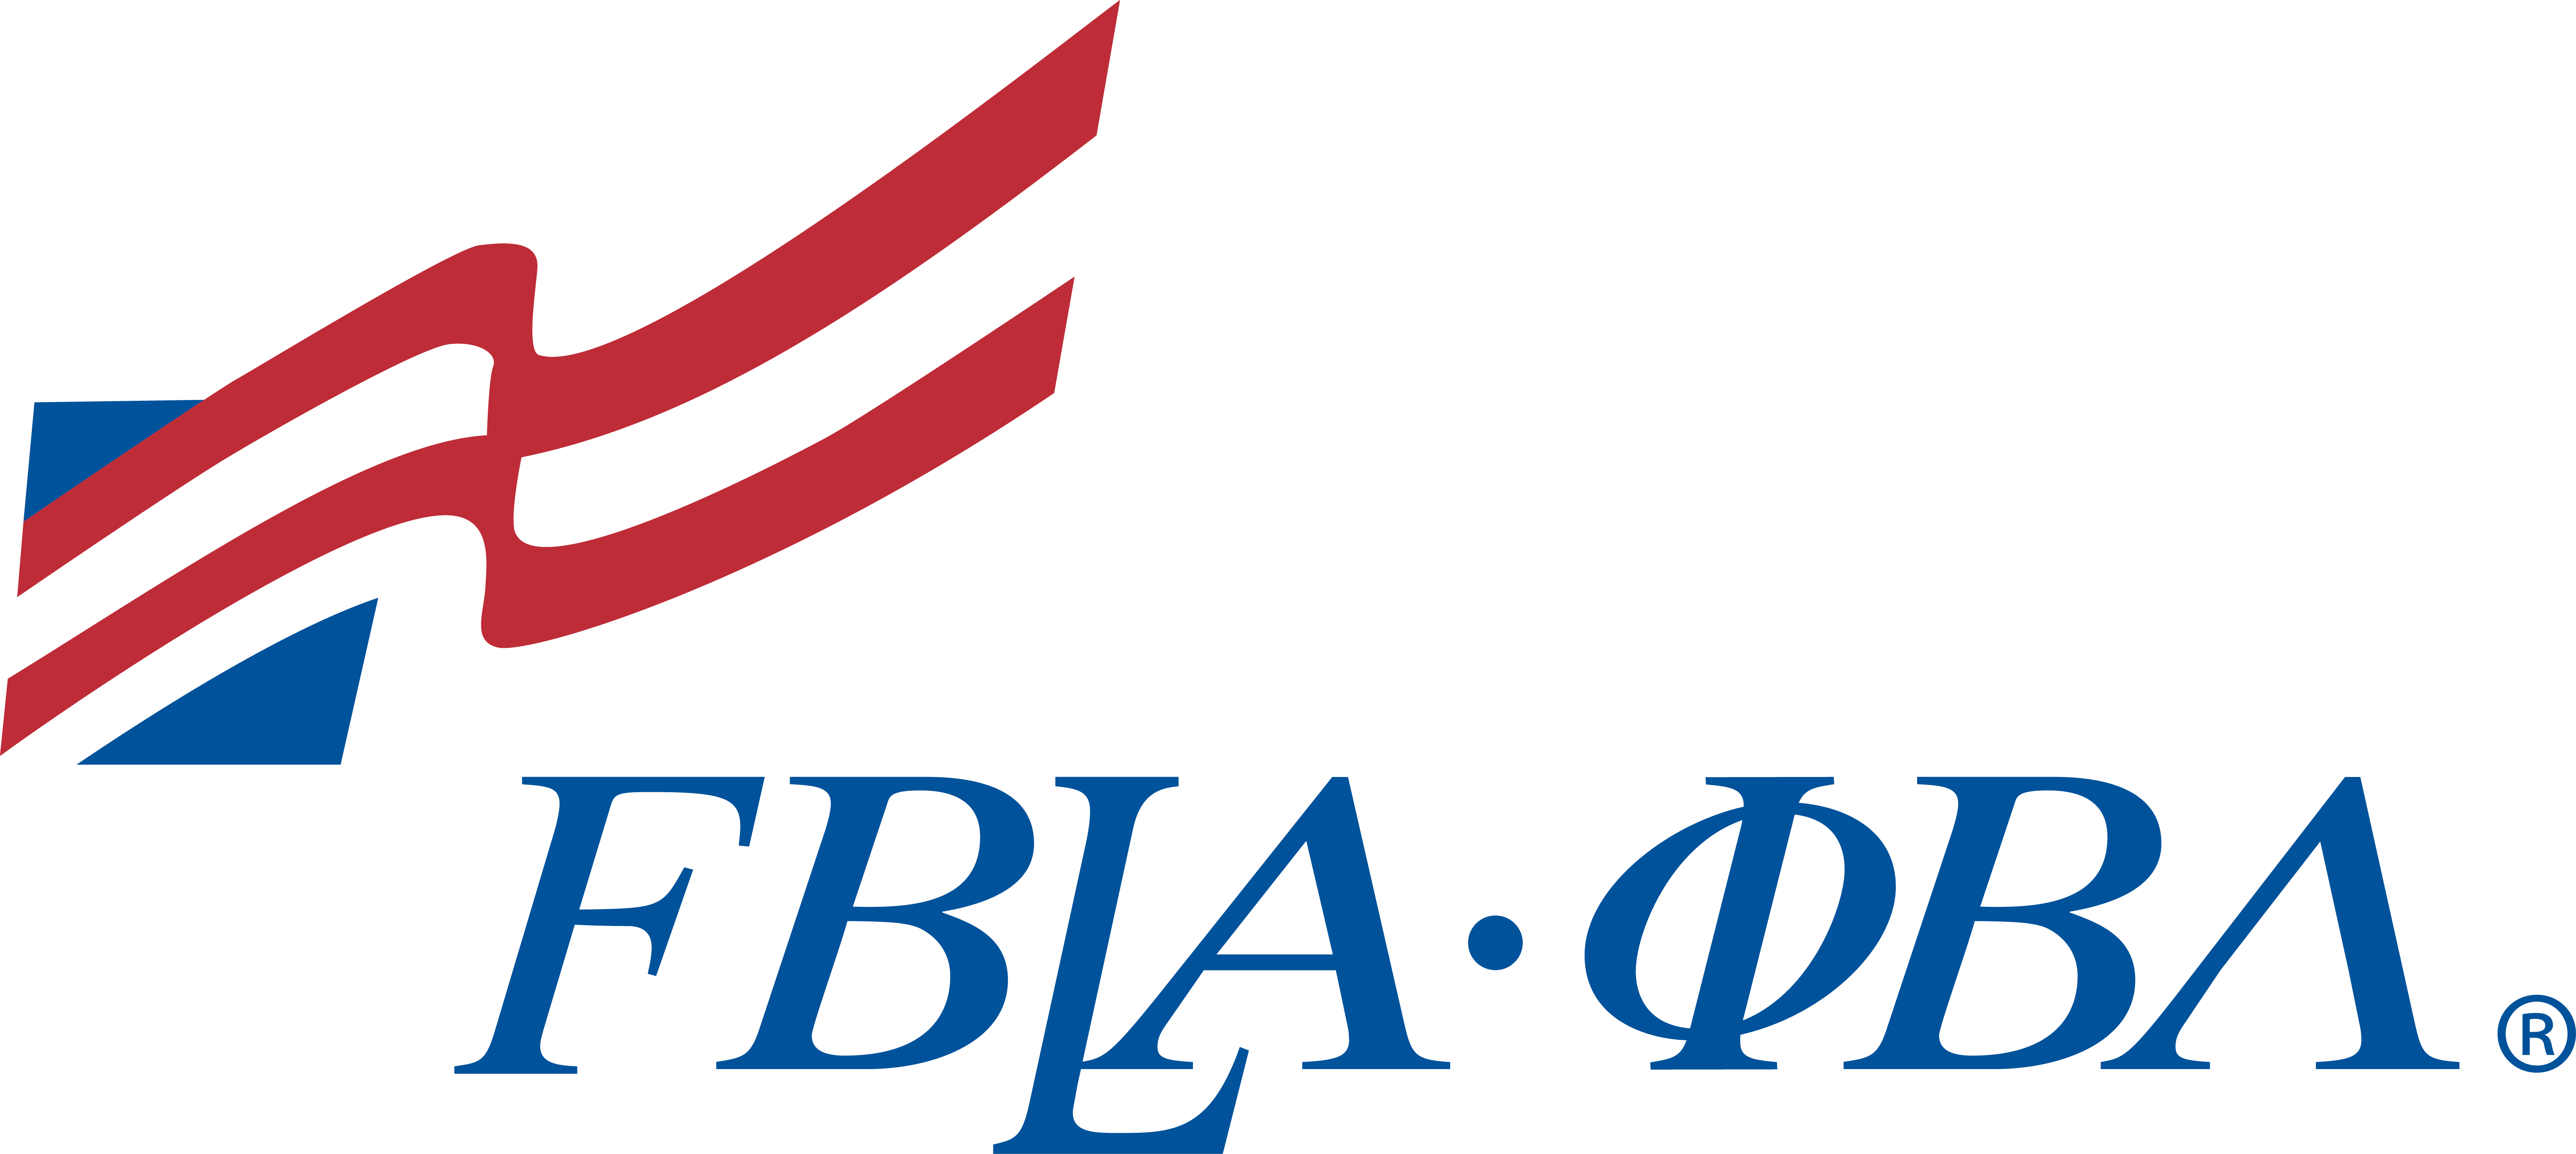 FBLA-PBL_registered